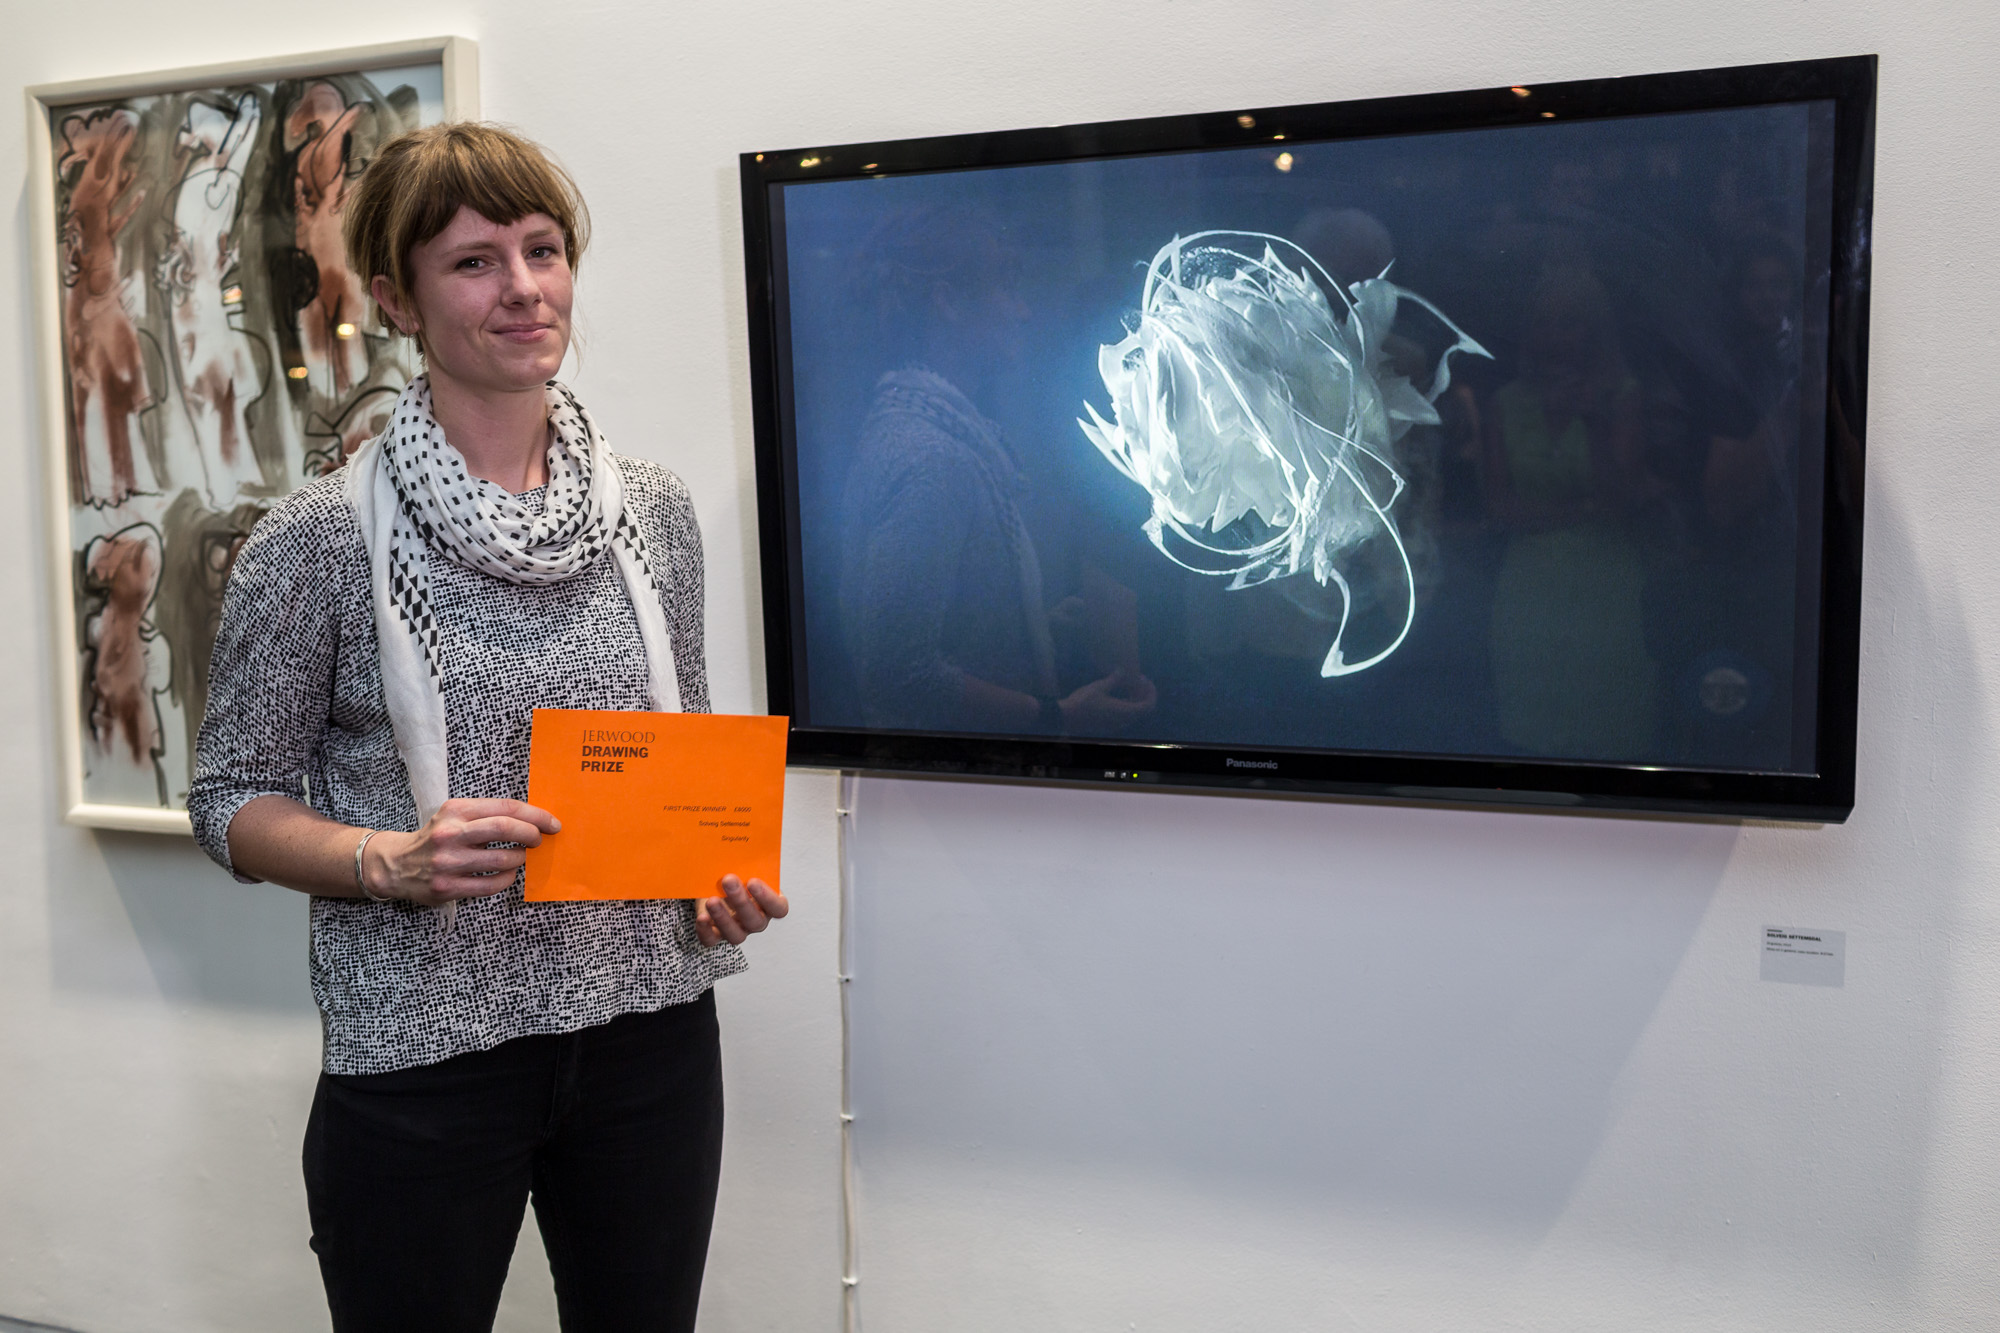 Solveig Settemsdal and her winning artwork 'Singularity'